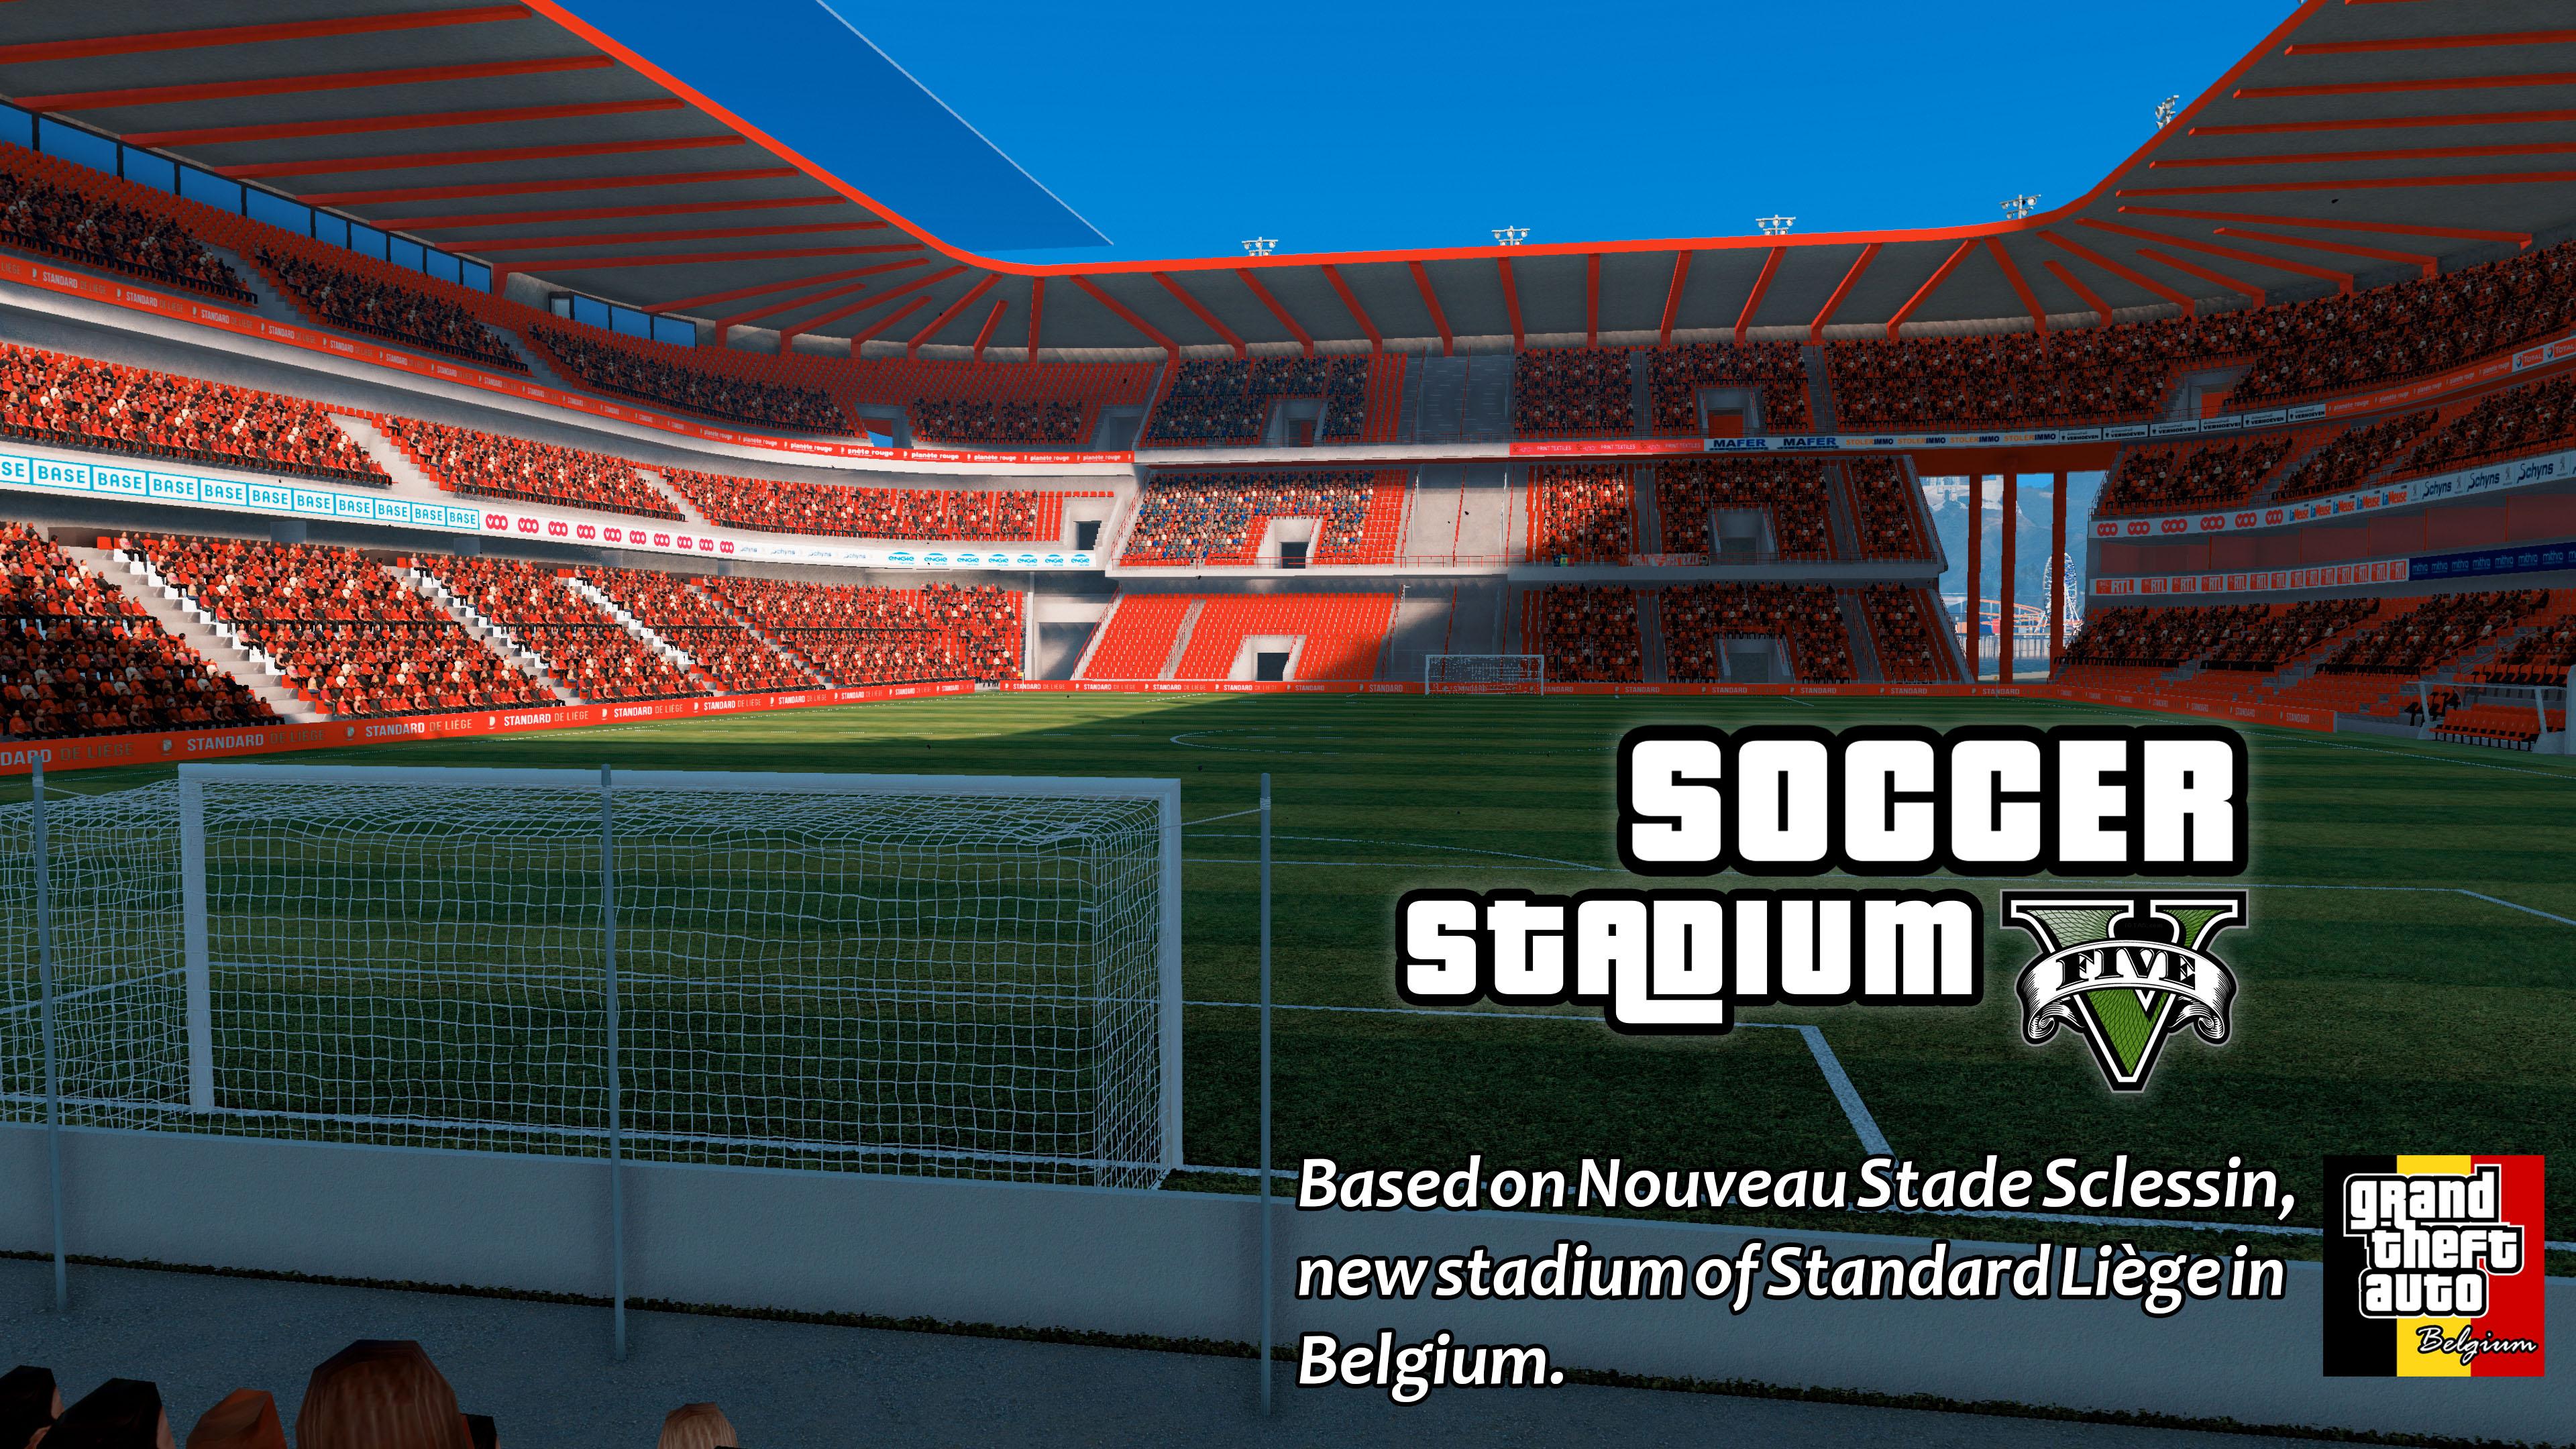 Soccer Stadium V  Nouveau Stade  Sclessin GTA5 Mods com